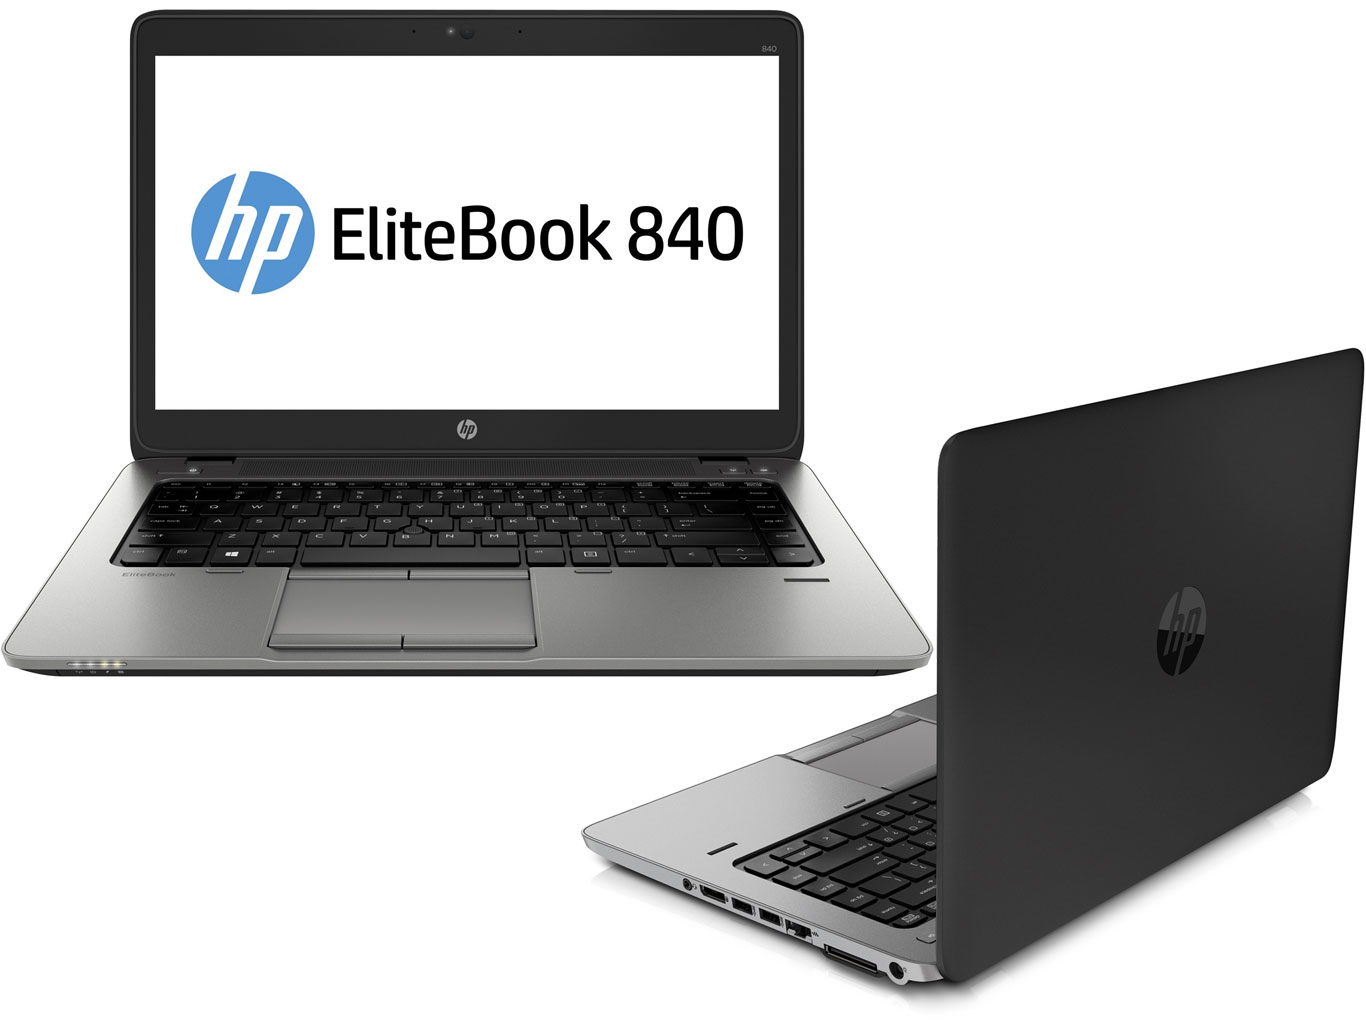 HP Elitebook 840 G1 i5-4300 2.9GHz RAM 4GB HDD 320GB 